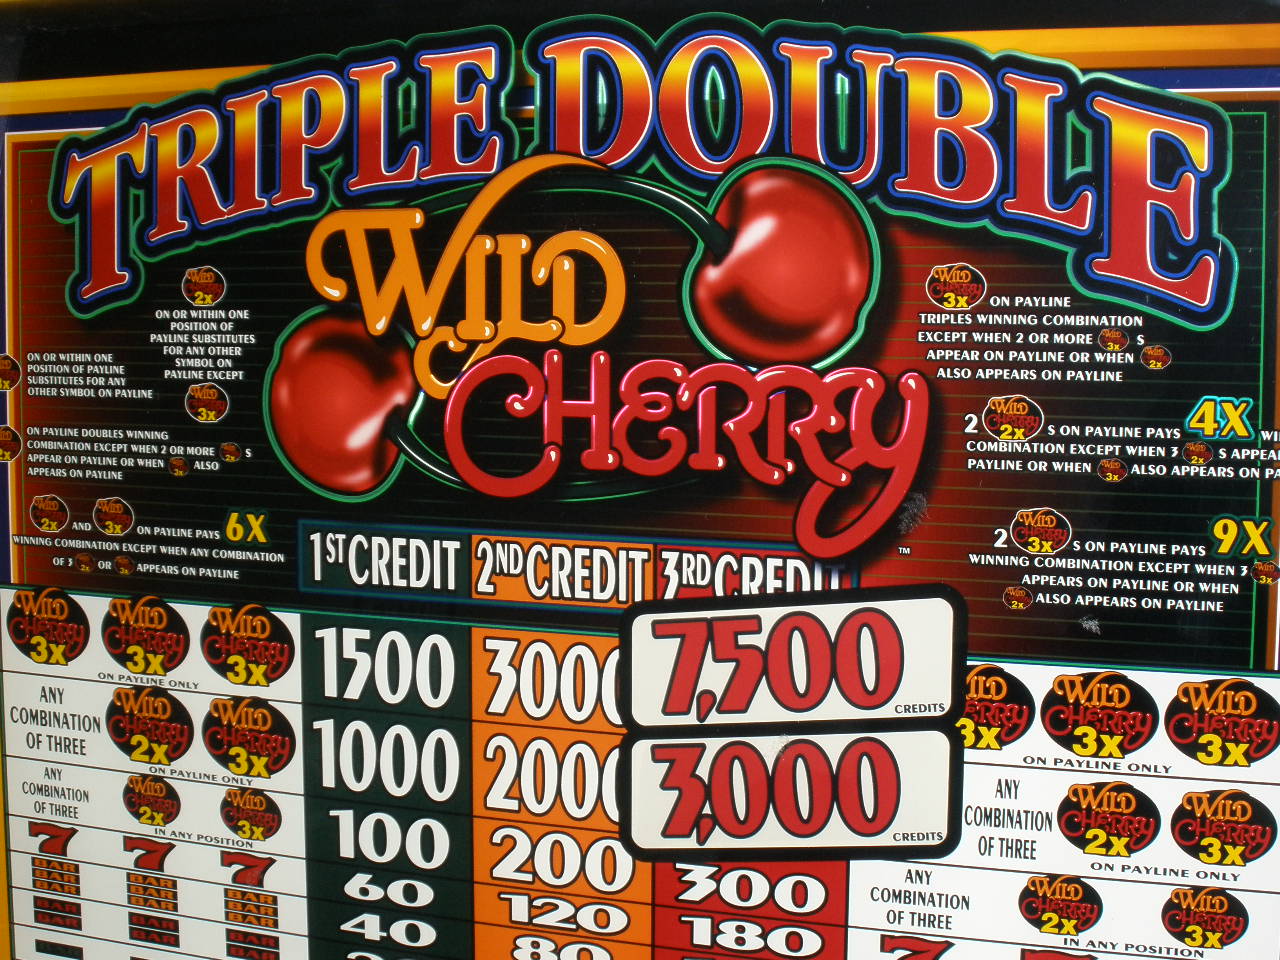 triple double slots free slots